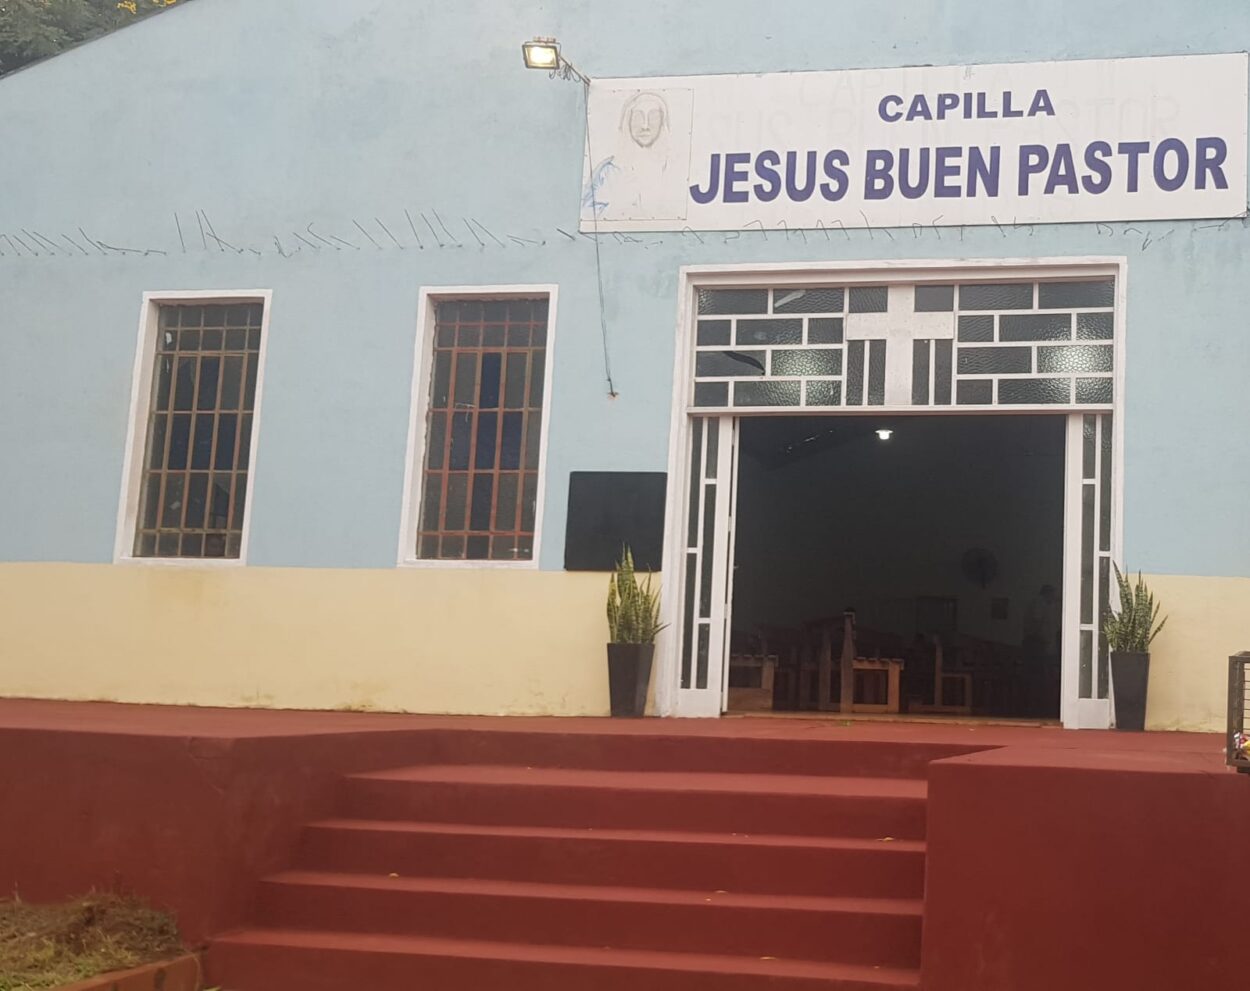 Capilla “Jesús Buen Pastor” celebrará su fiesta patronal este domingo 21 imagen-29